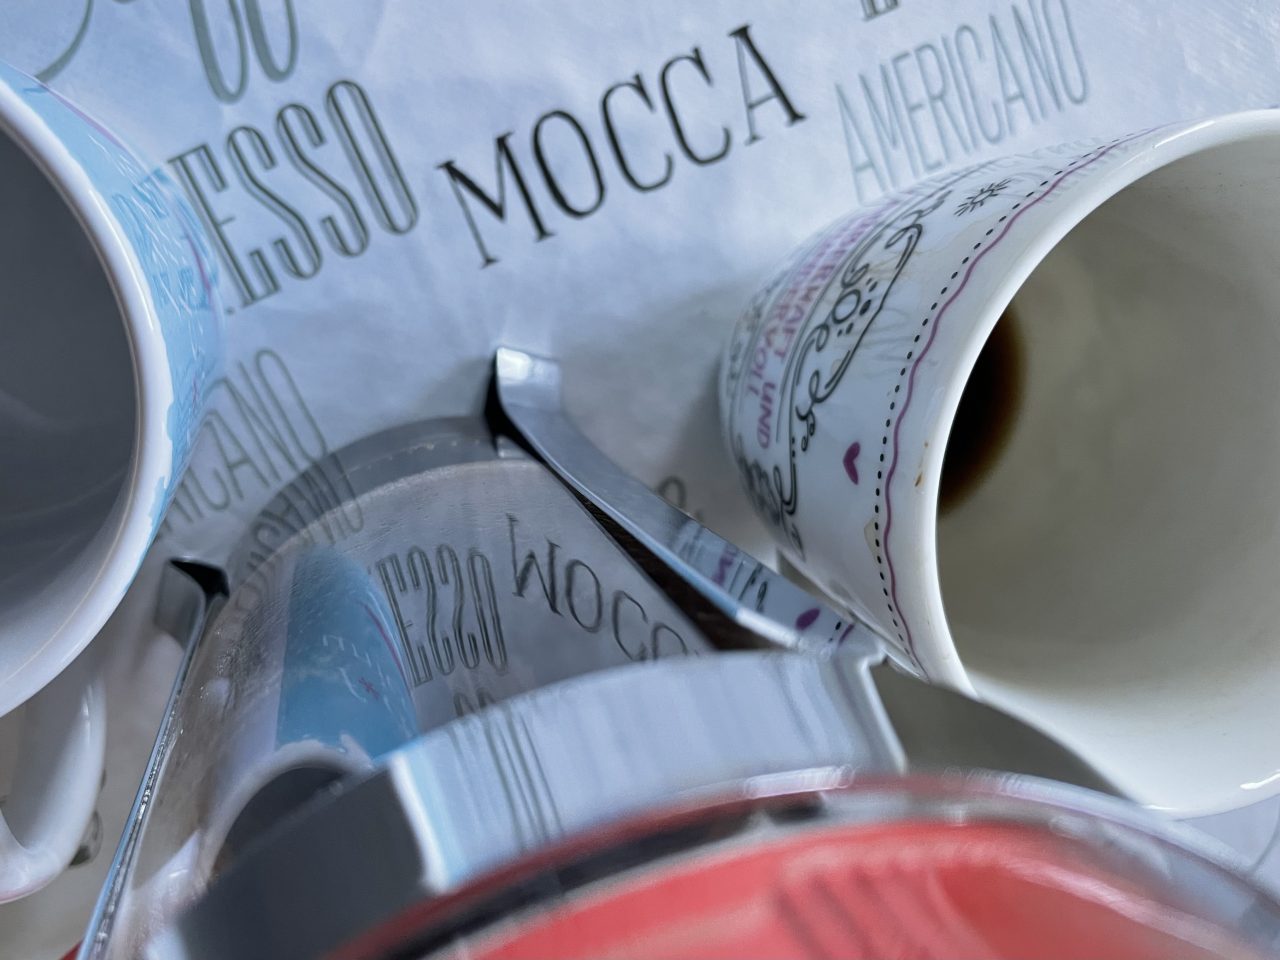 auf einer mit "Mocca" Schriftzügen bedruckten Decke stehen zwei Tassen und eine Kaffeekanne